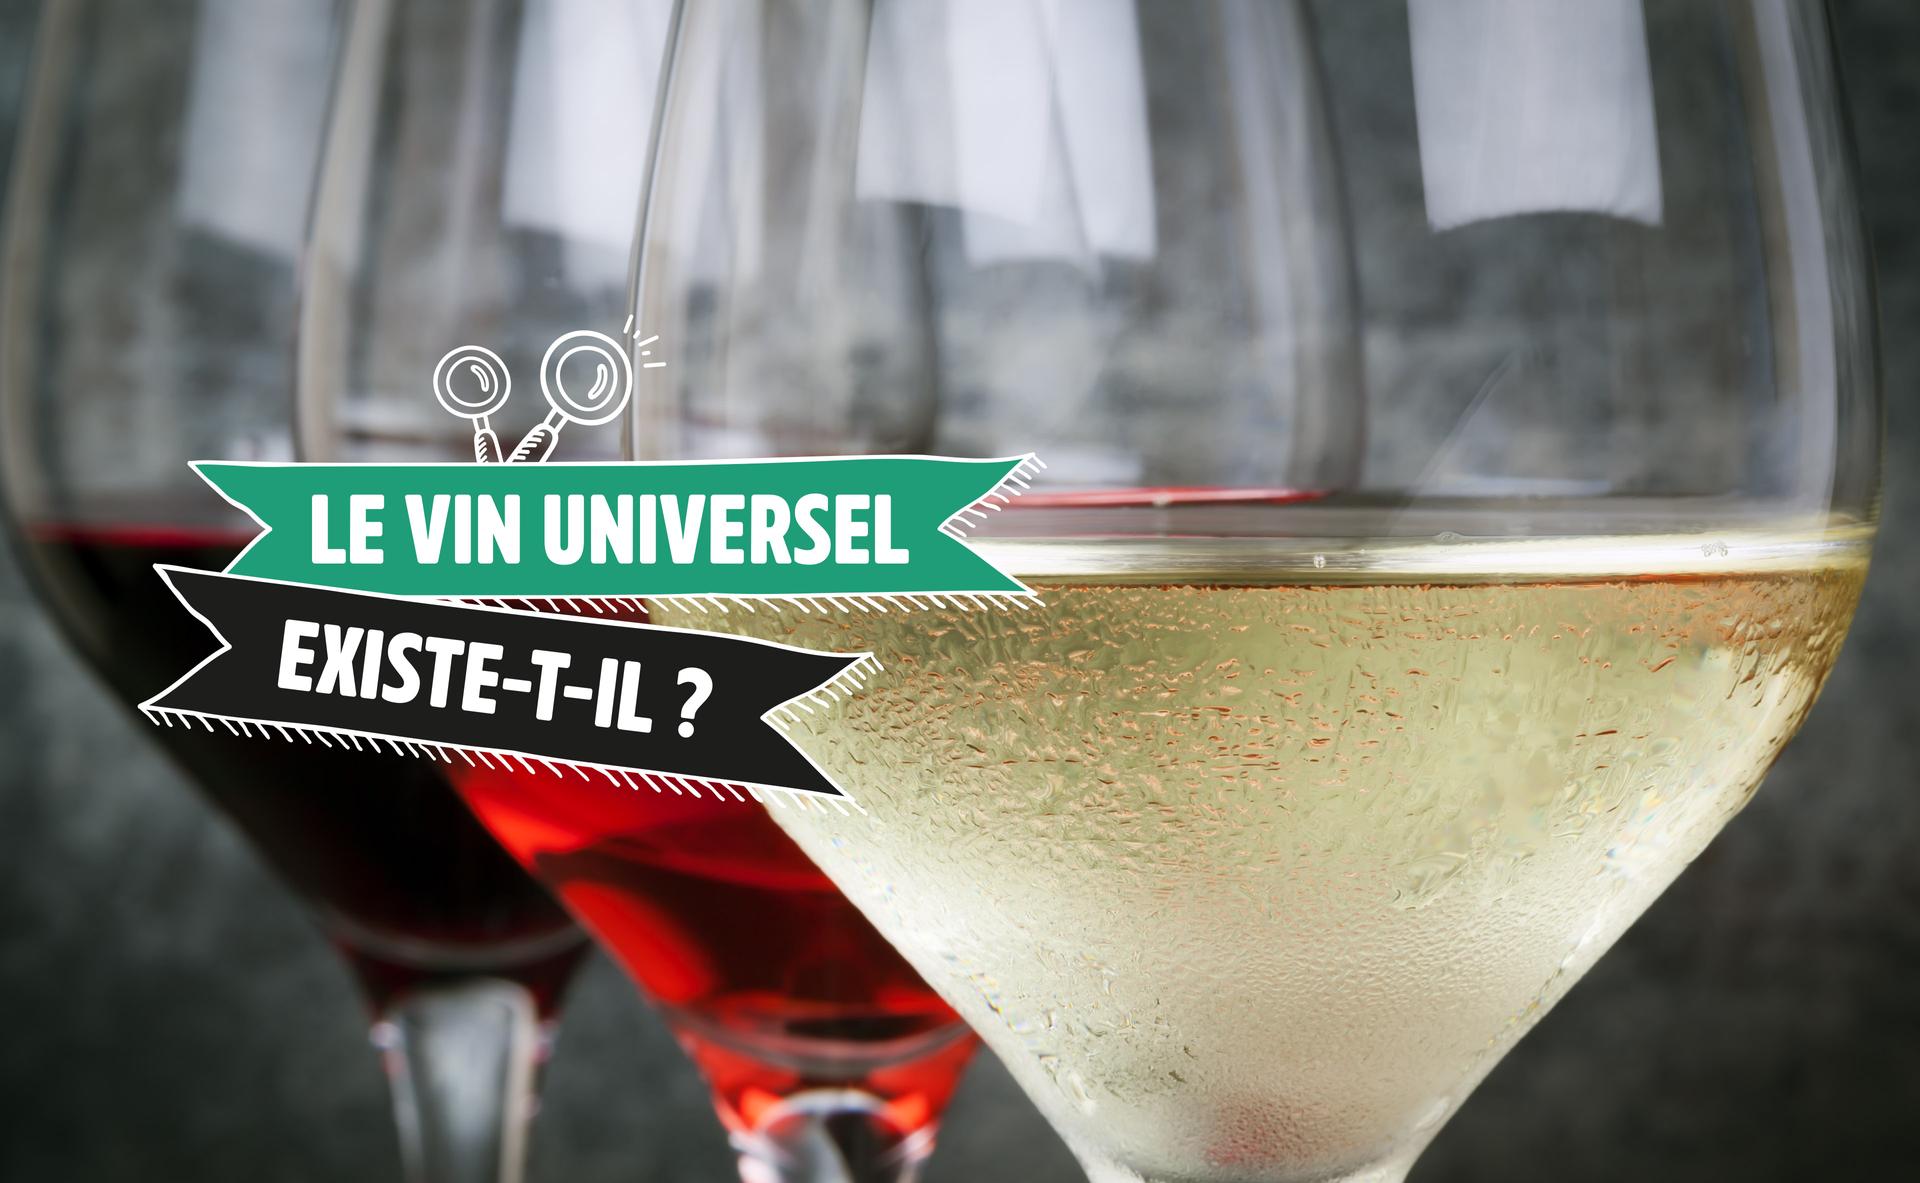 Le vin universel existe-t-il ?